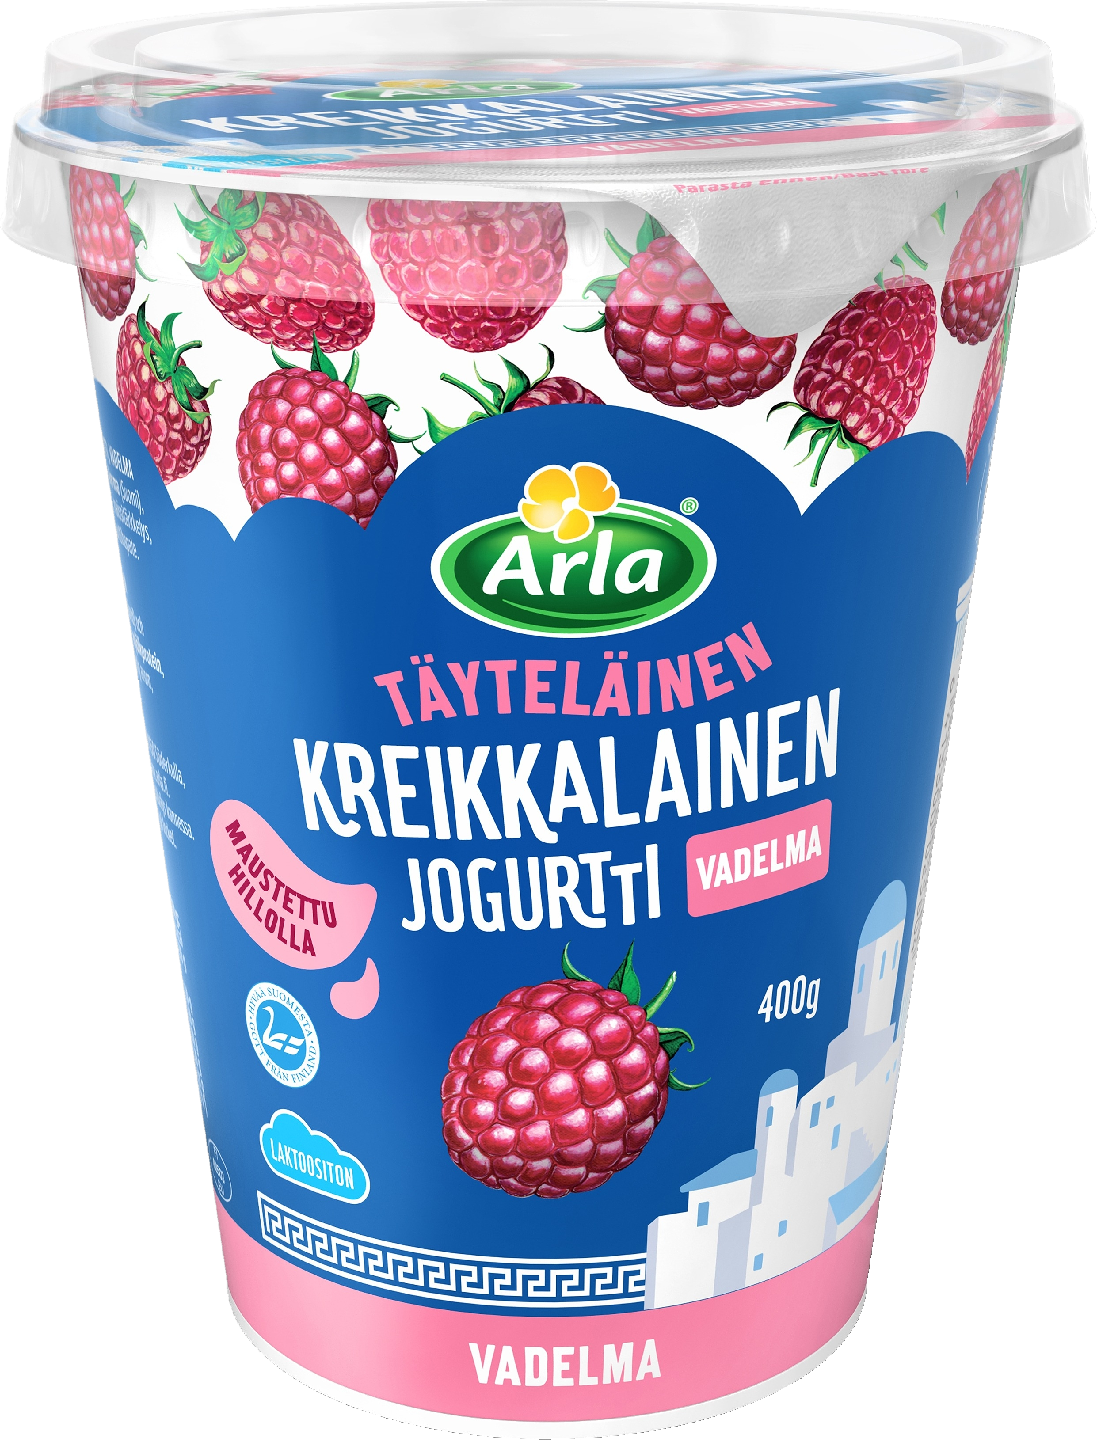 Arla kreikkalainen jogurtti 400g vadelma laktoositon